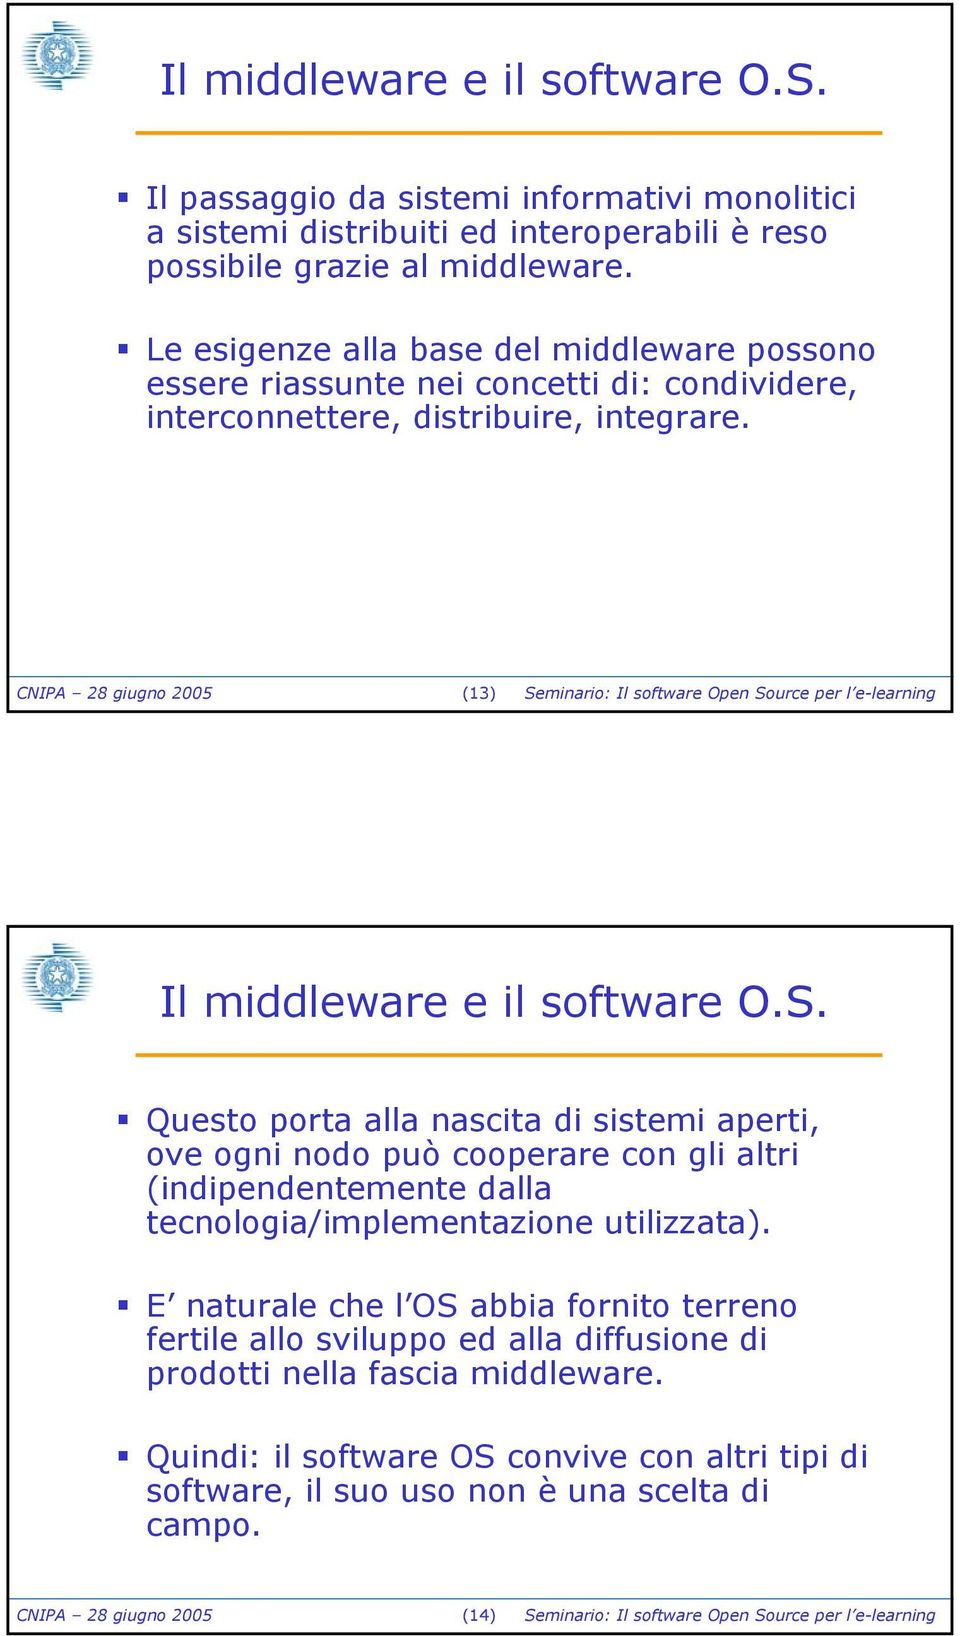 CNIPA 28 giugno 2005 (13) Seminario: Il software Open Source per l e-learning Il middleware e il software O.S. Questo porta alla nascita di sistemi aperti, ove ogni nodo può cooperare con gli altri (indipendentemente dalla tecnologia/implementazione utilizzata).